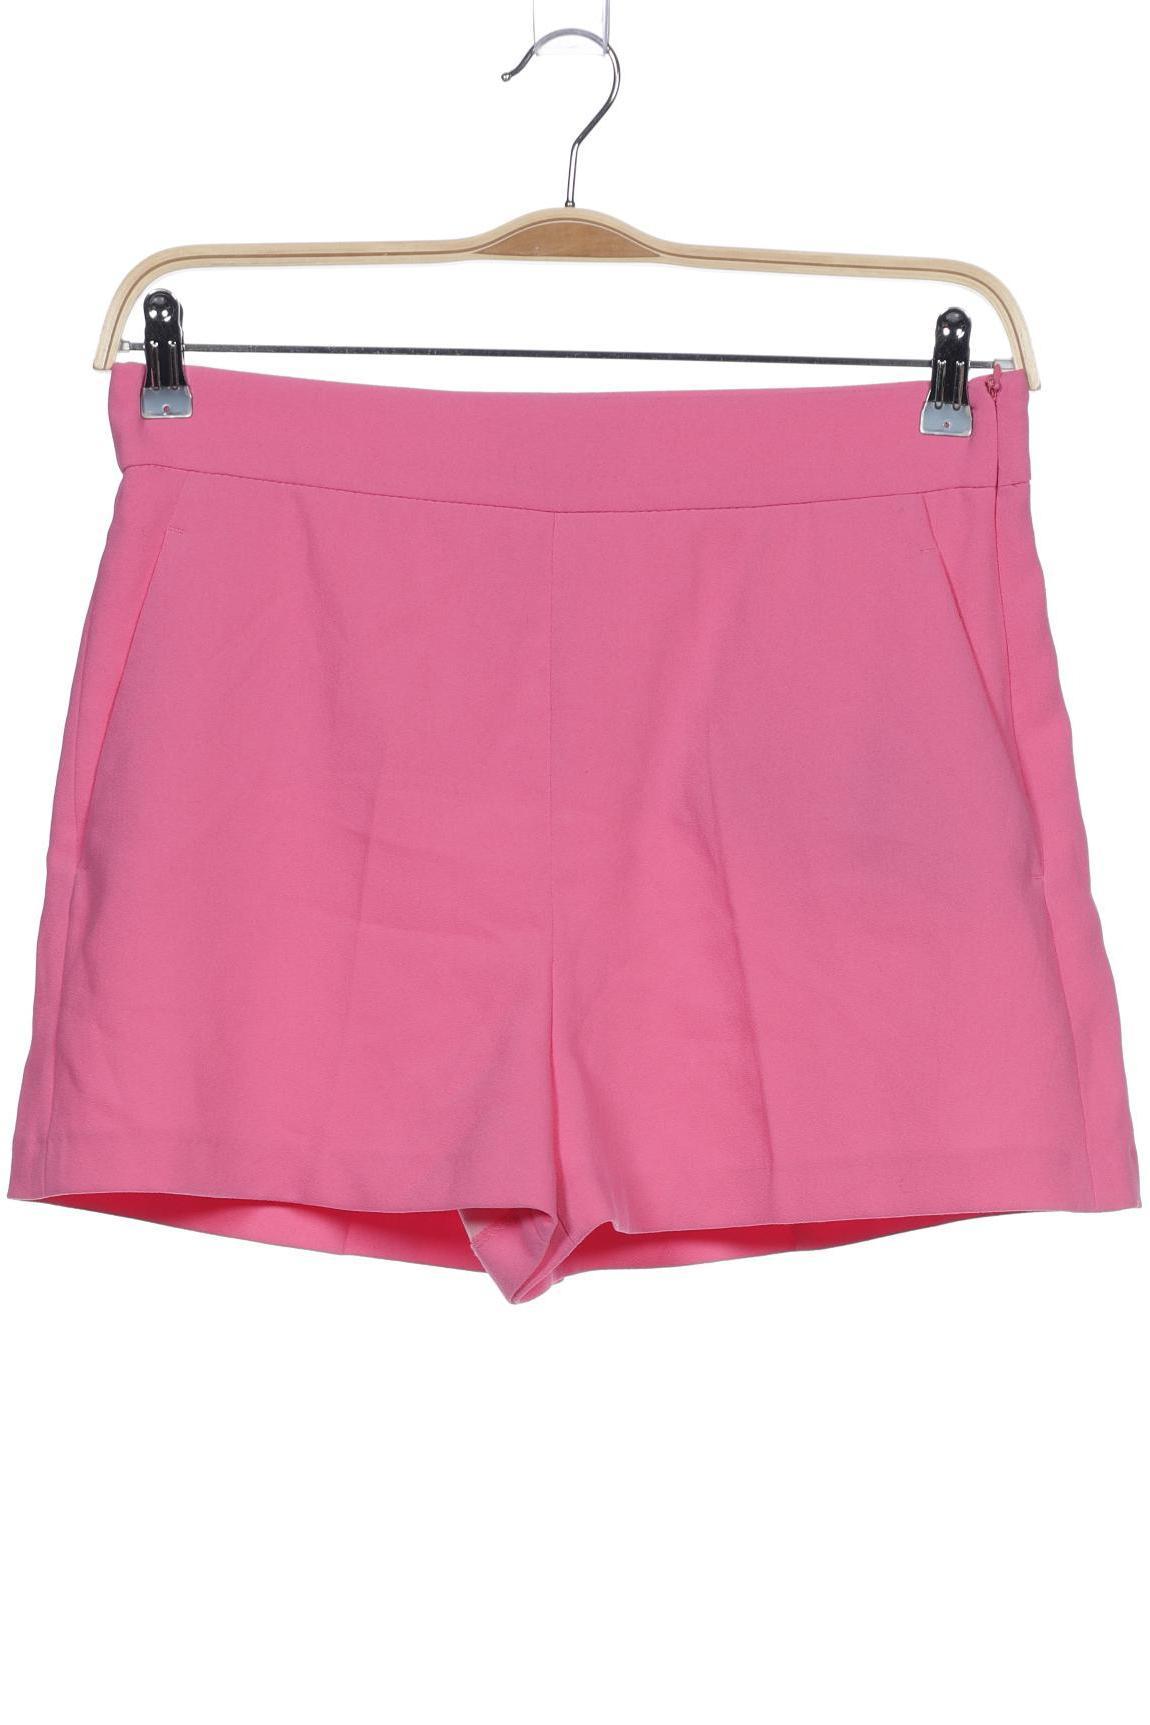 ZARA Damen Shorts, pink von ZARA